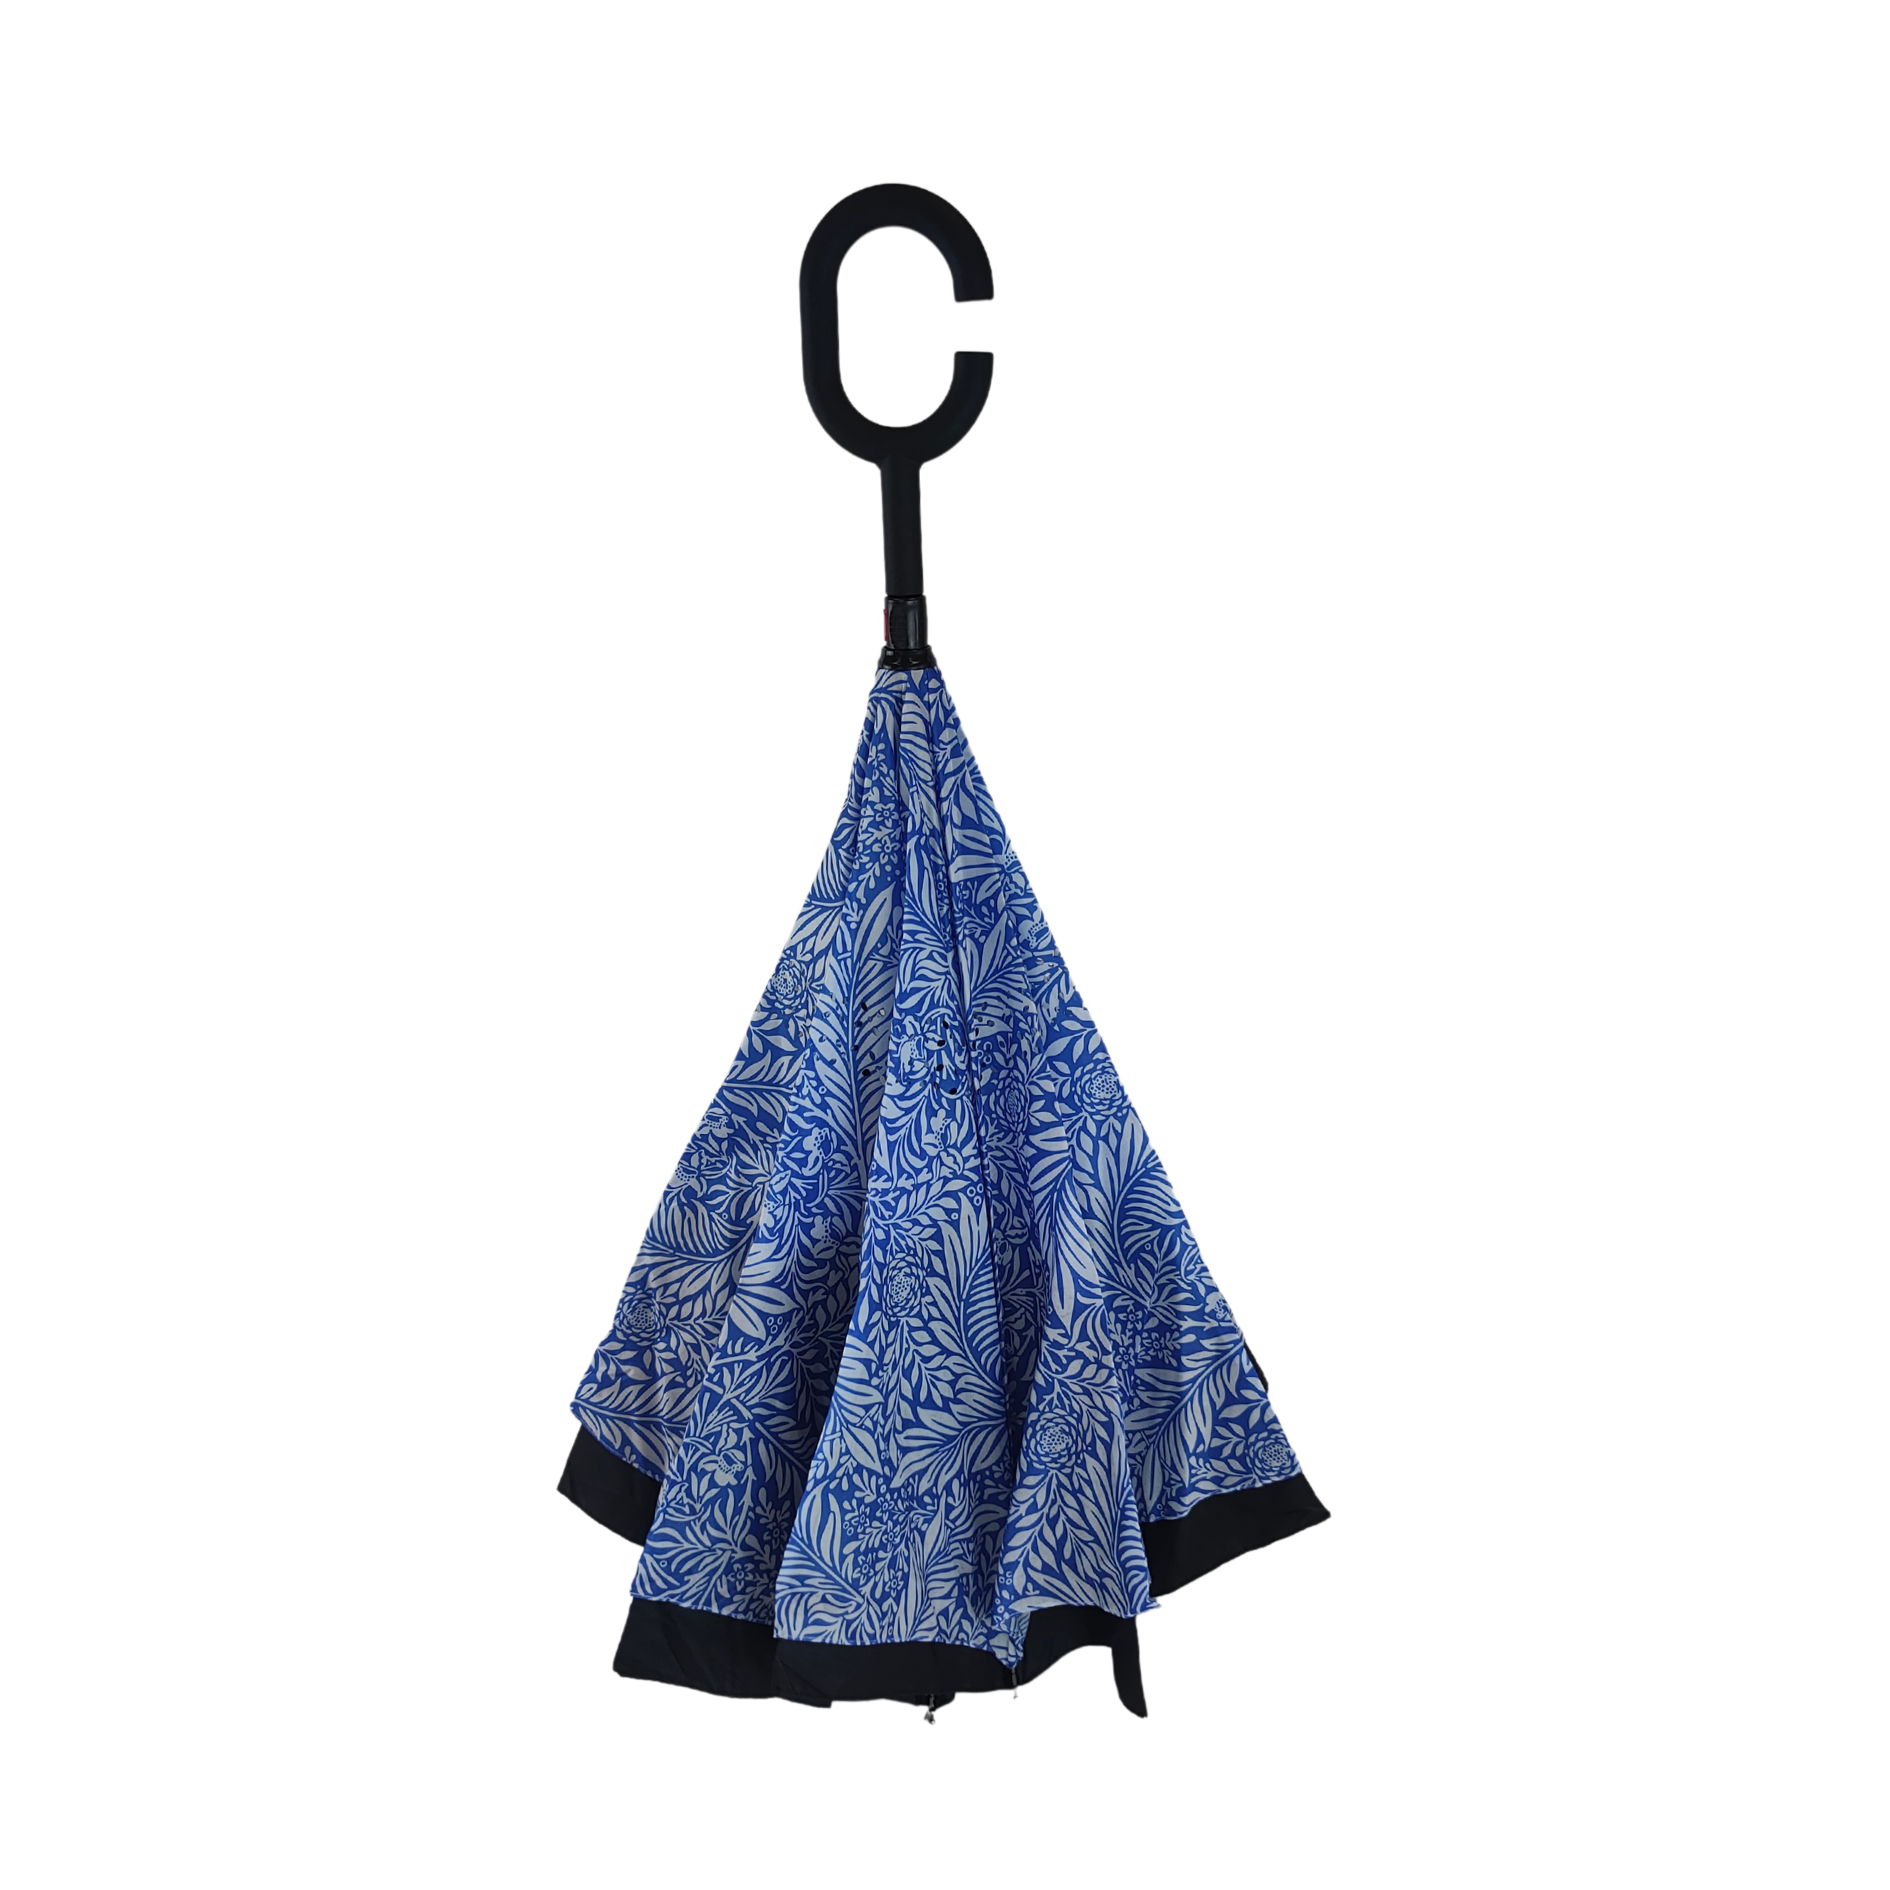 Artico - William Morris Inverted Umbrella Larkspur Blue